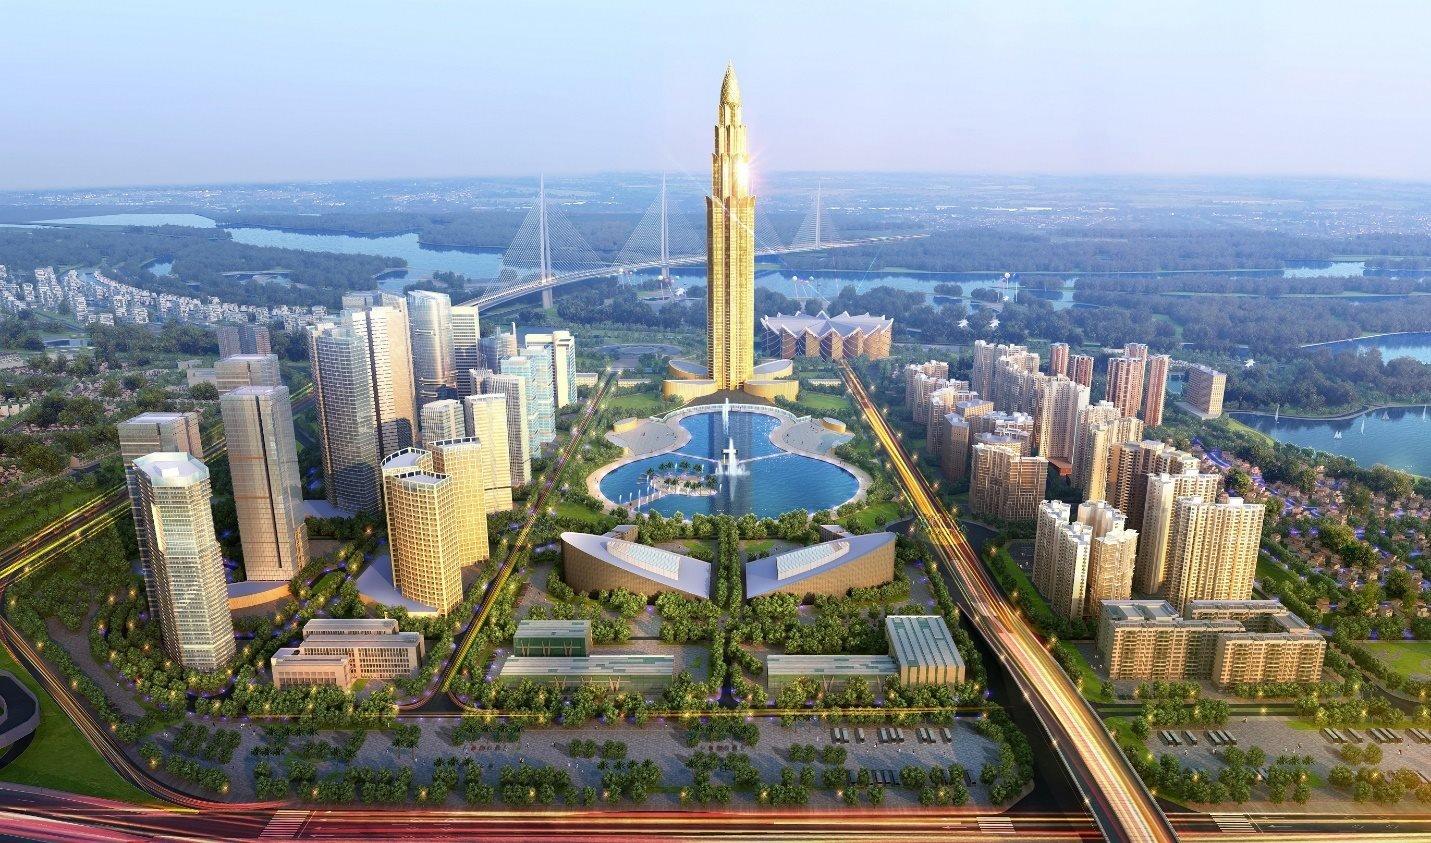 Tháp trung tâm tài chính cao 108 tầng nằm trong Dự án thành phố thông minh Bắc Hà Nội sẽ được khởi công vào ngày 10/11 sắp tới